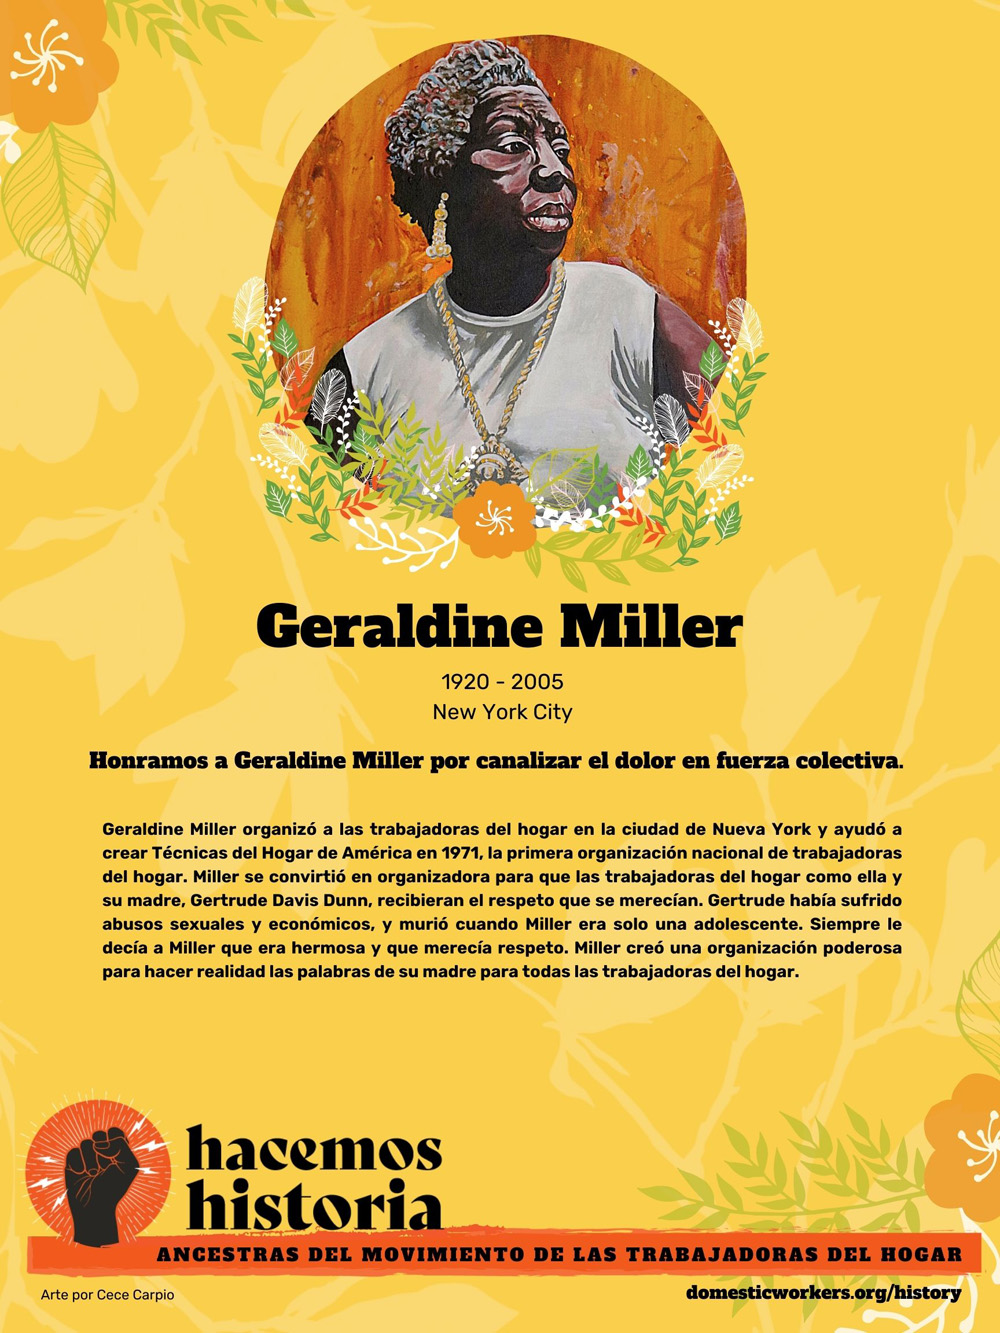 Retratos de las ancestras del movimiento de trabajadoras de hogar: Geraldine Miller